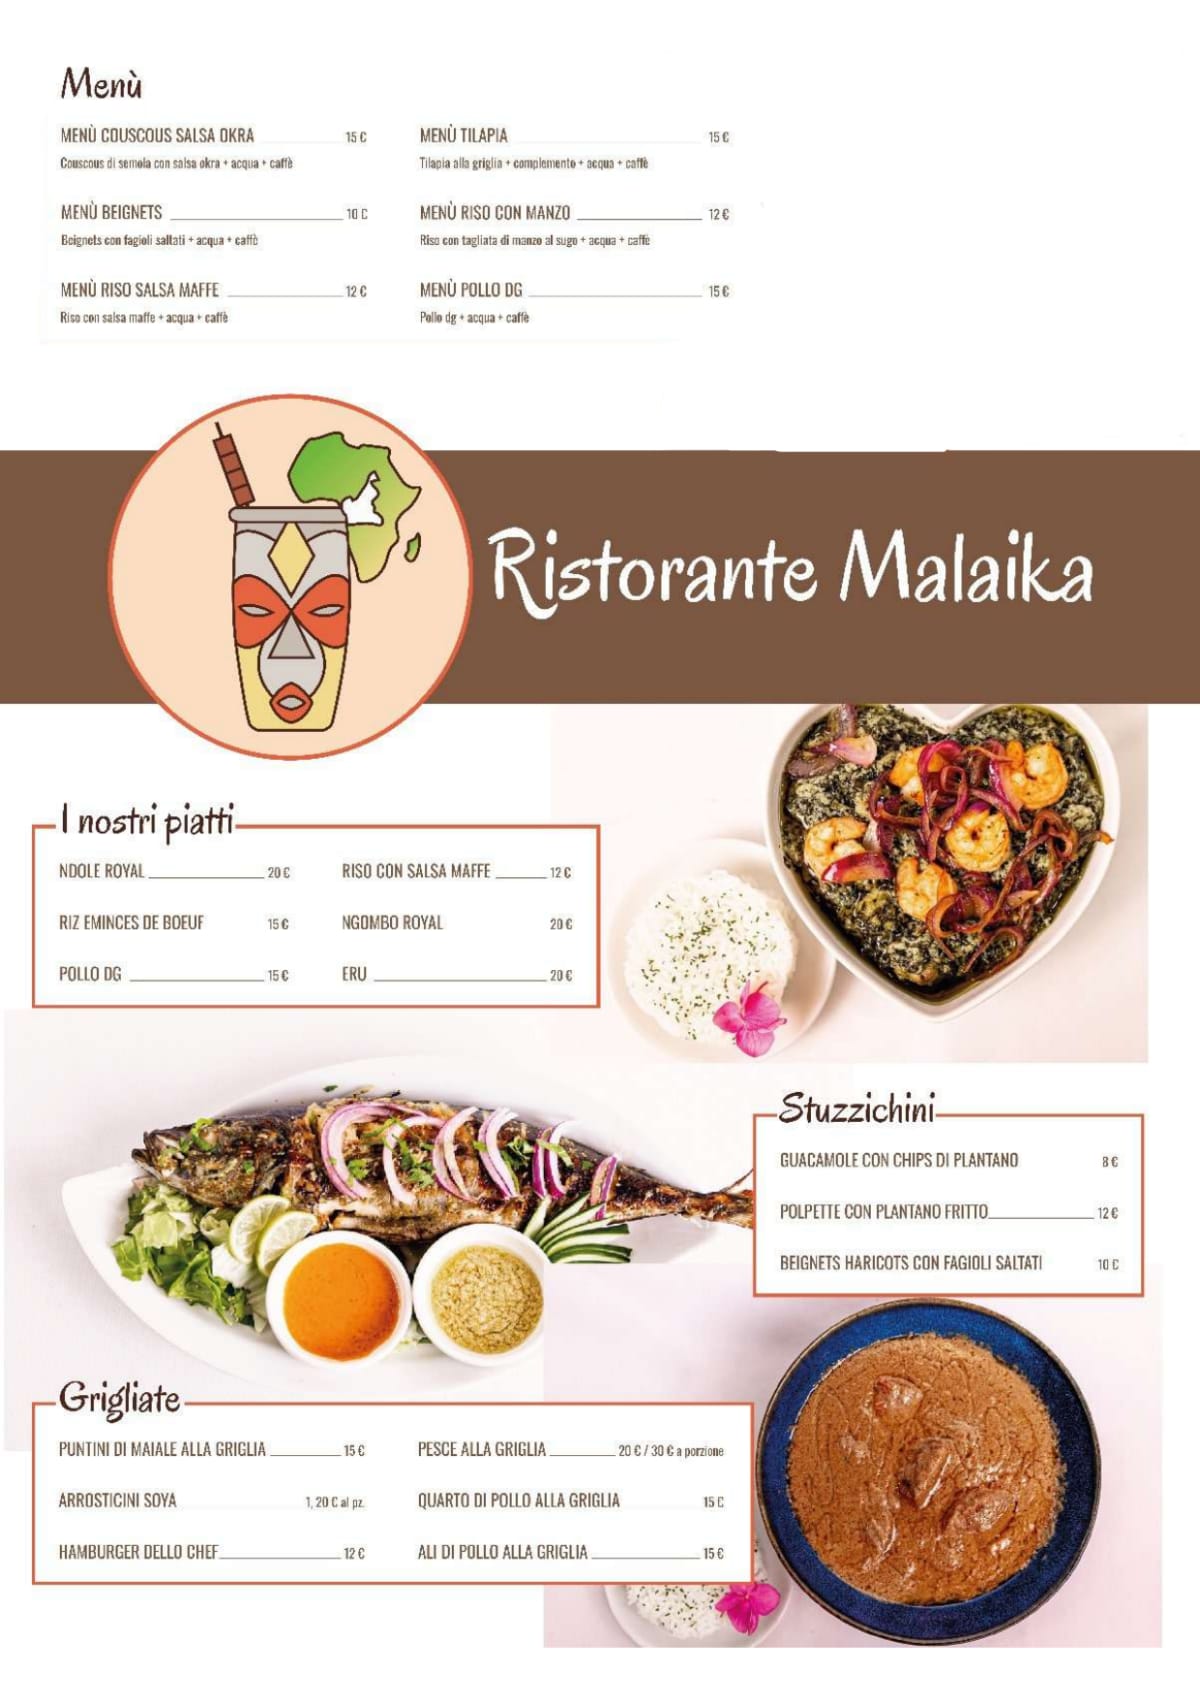 Ristorante Malaika menu